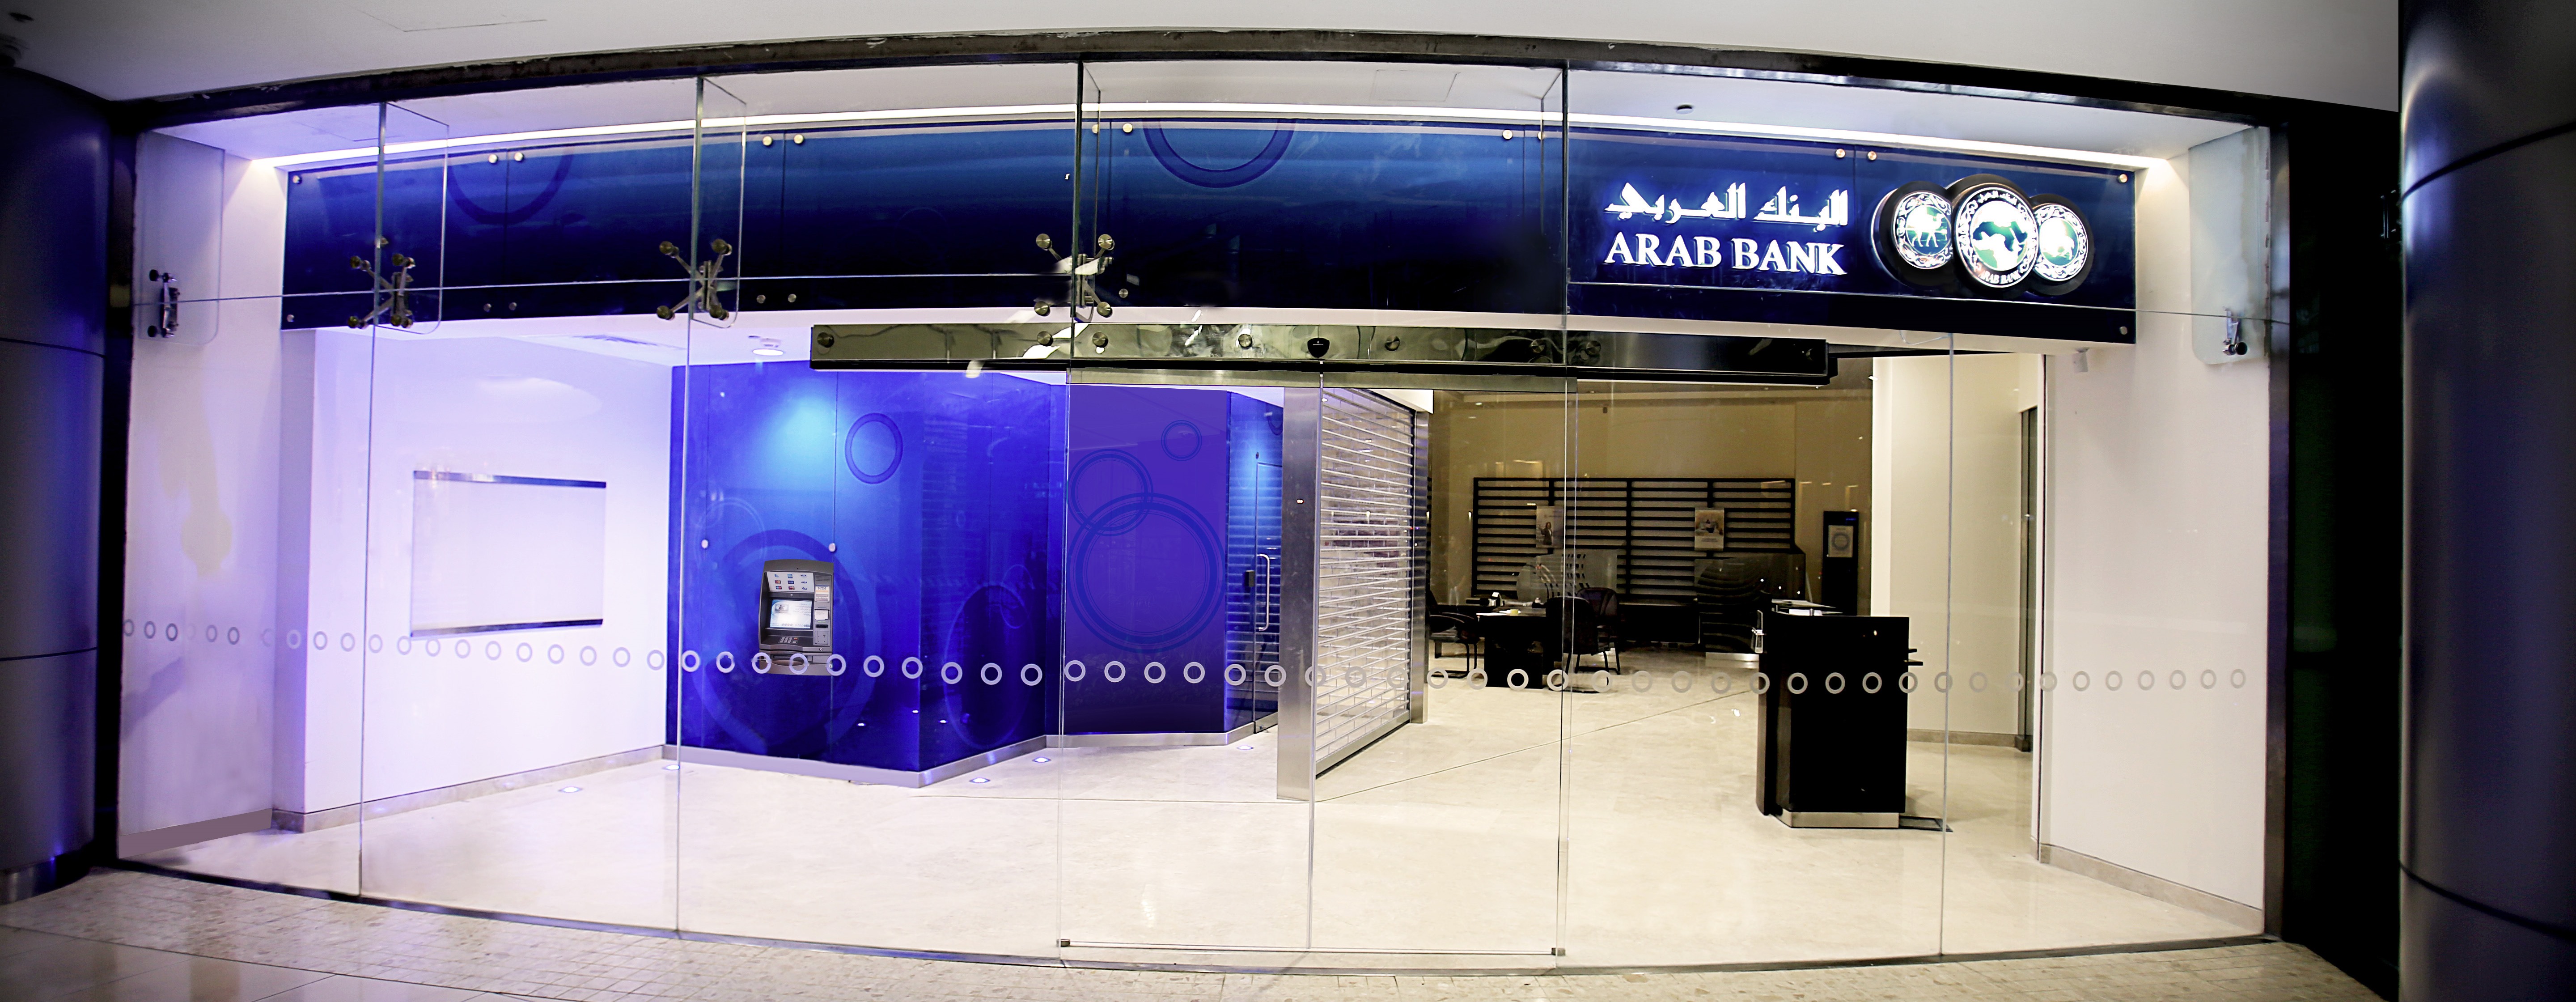 البنك العربي يفتتح فرعاً جديداً في العبدلي مول